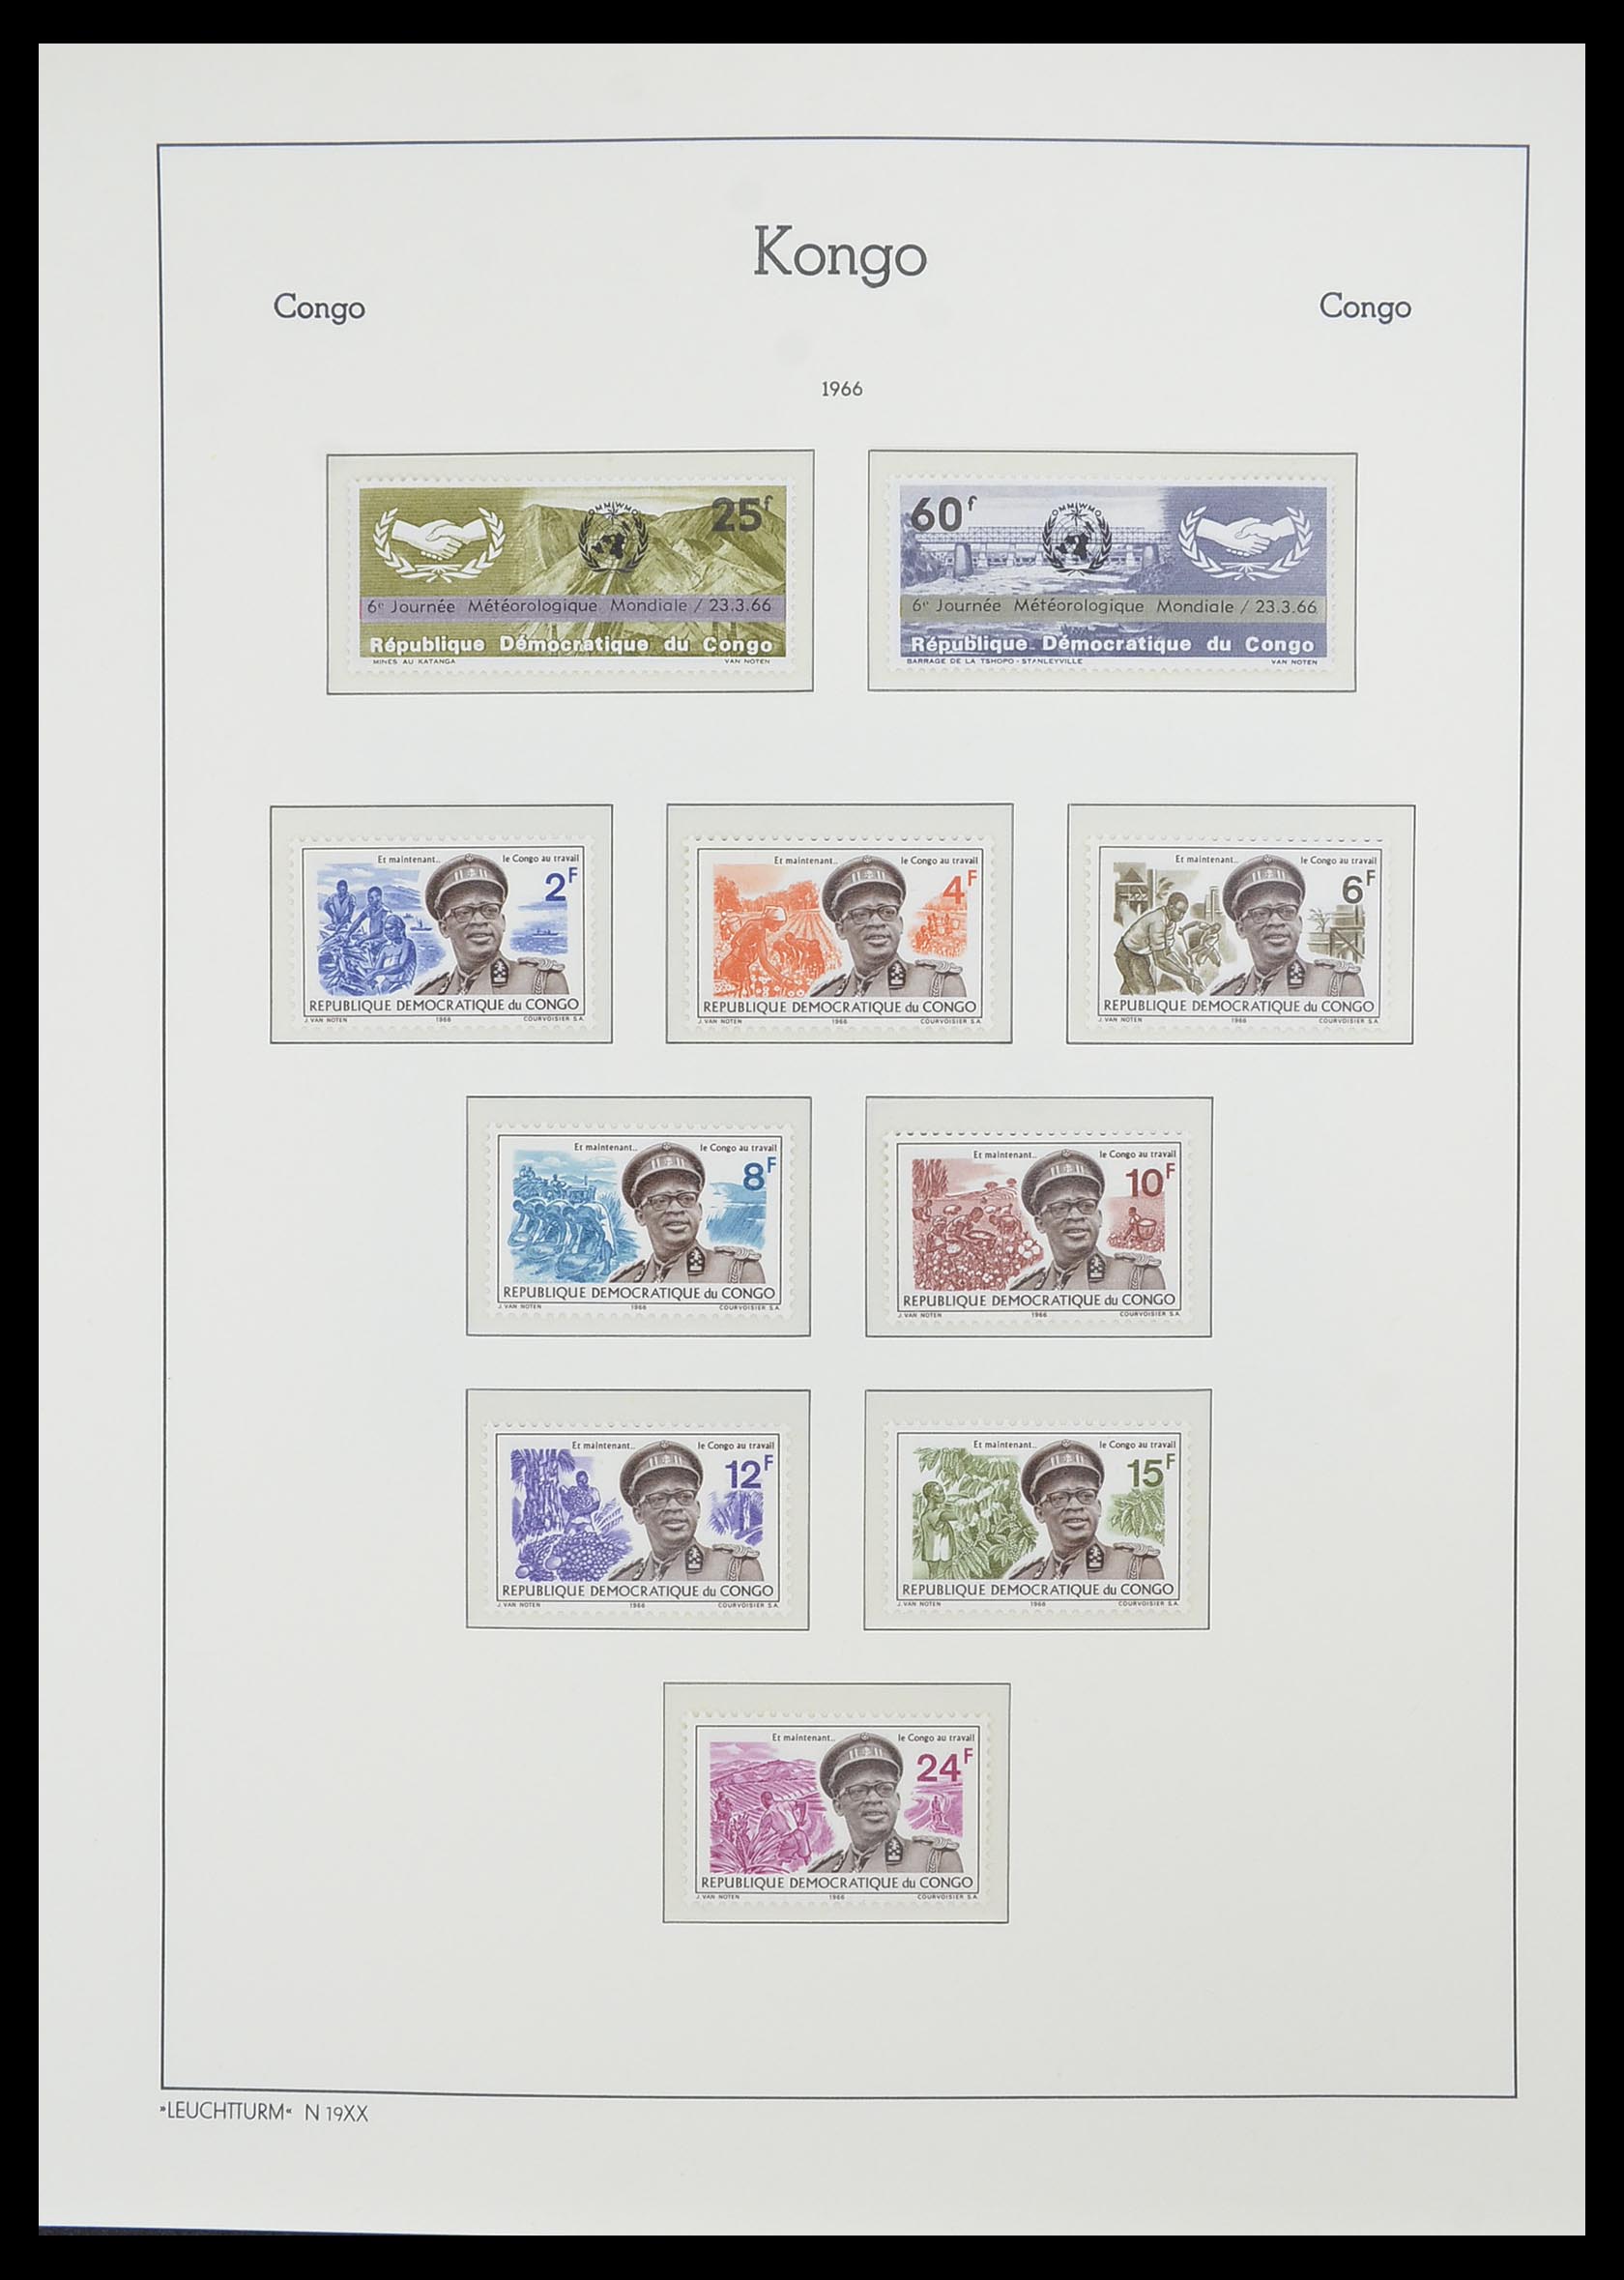 33768 031 - Stamp collection 33768 Congo/Zaïre 1960-2006.